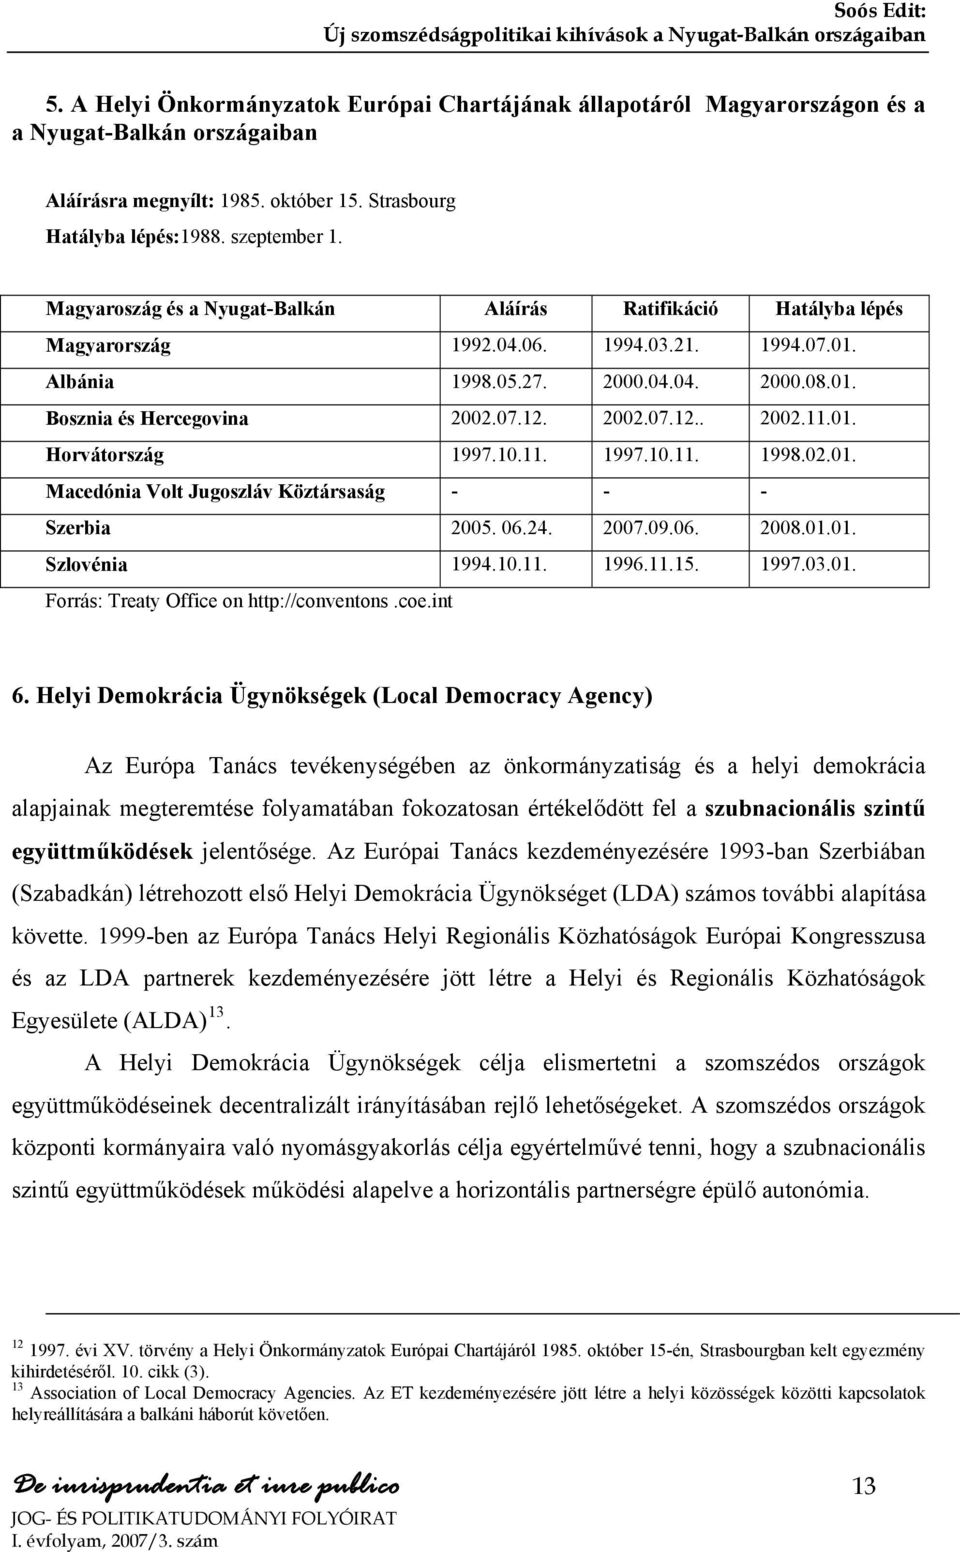 01. Horvátország 1997.10.11. 1997.10.11. 1998.02.01. Macedónia Volt Jugoszláv Köztársaság - - - Szerbia 2005. 06.24. 2007.09.06. 2008.01.01. Szlovénia 1994.10.11. 1996.11.15. 1997.03.01. Forrás: Treaty Office on http://conventons.